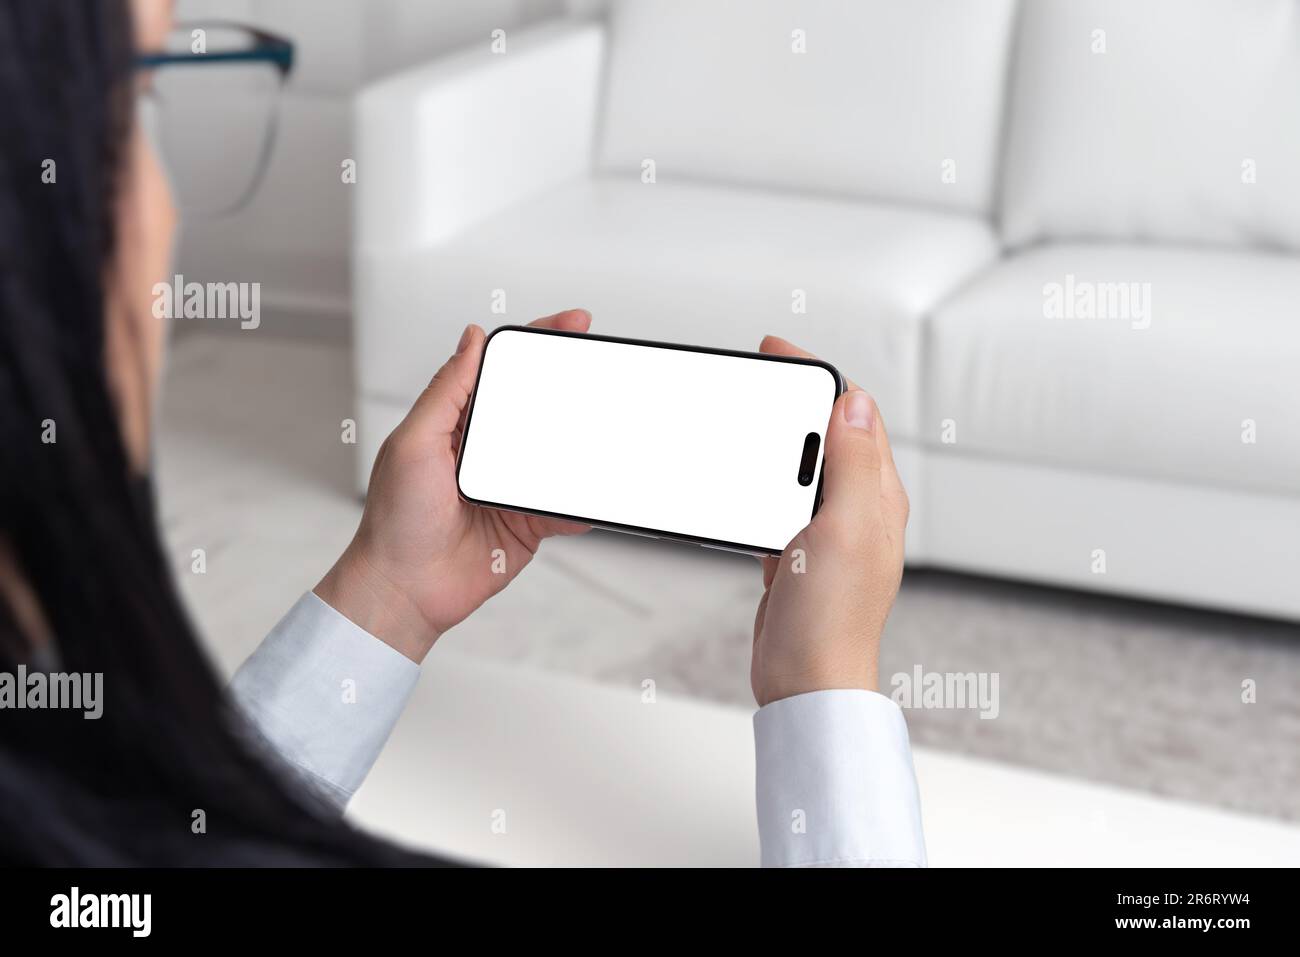 Die junge Frau sitzt auf einem weißen Sofa und hält das Smartphone in horizontaler Position und sieht es sich an. Isolierter Bildschirm in Weiß für Modell- und App-Präsentation Stockfoto